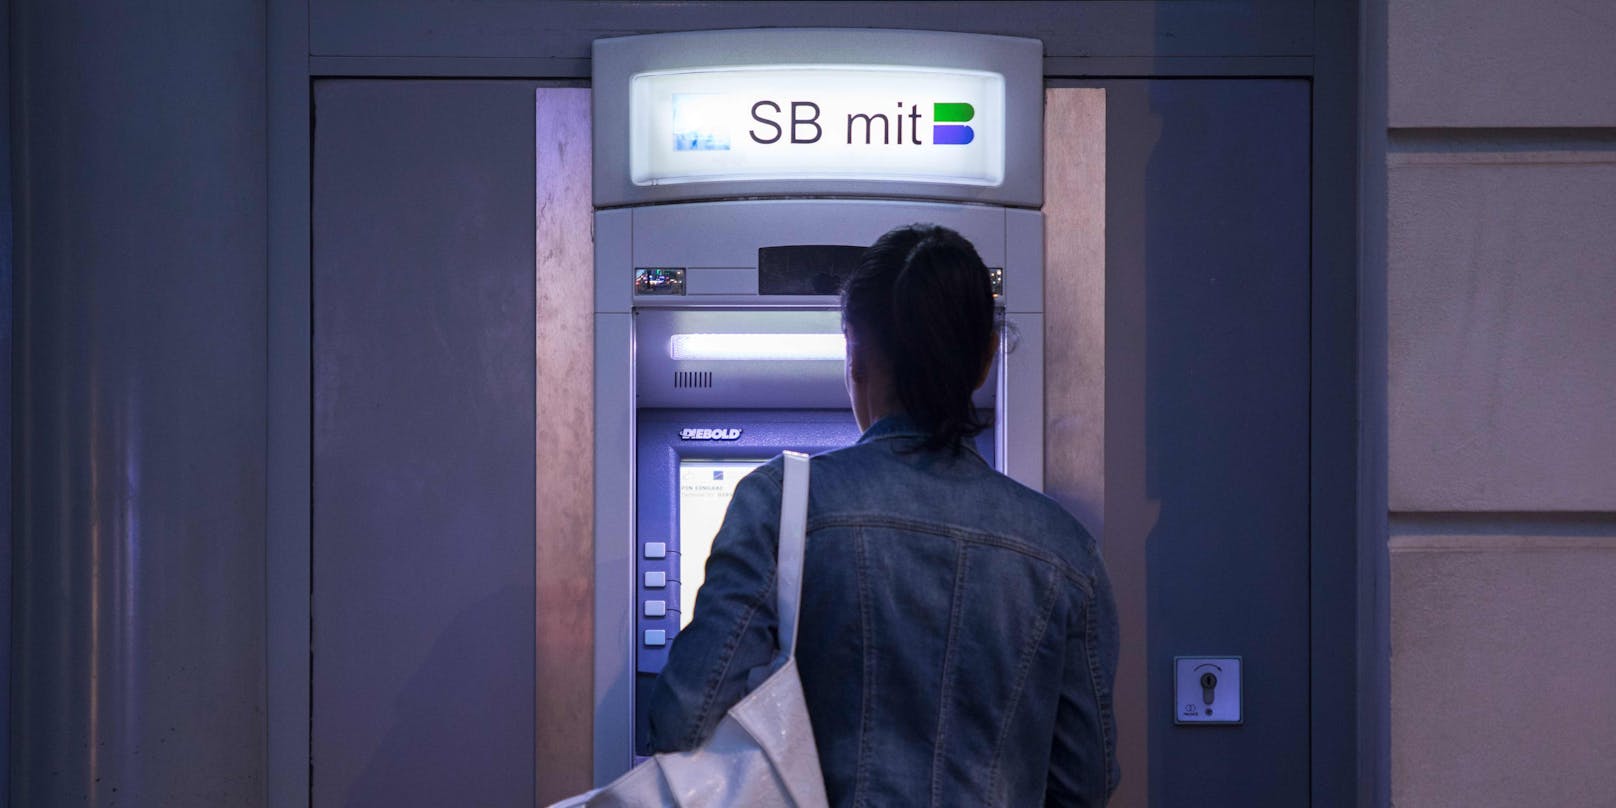 Bankomat: Bargeld-Behebung an einem Gerät in Wien. (Archivfoto)